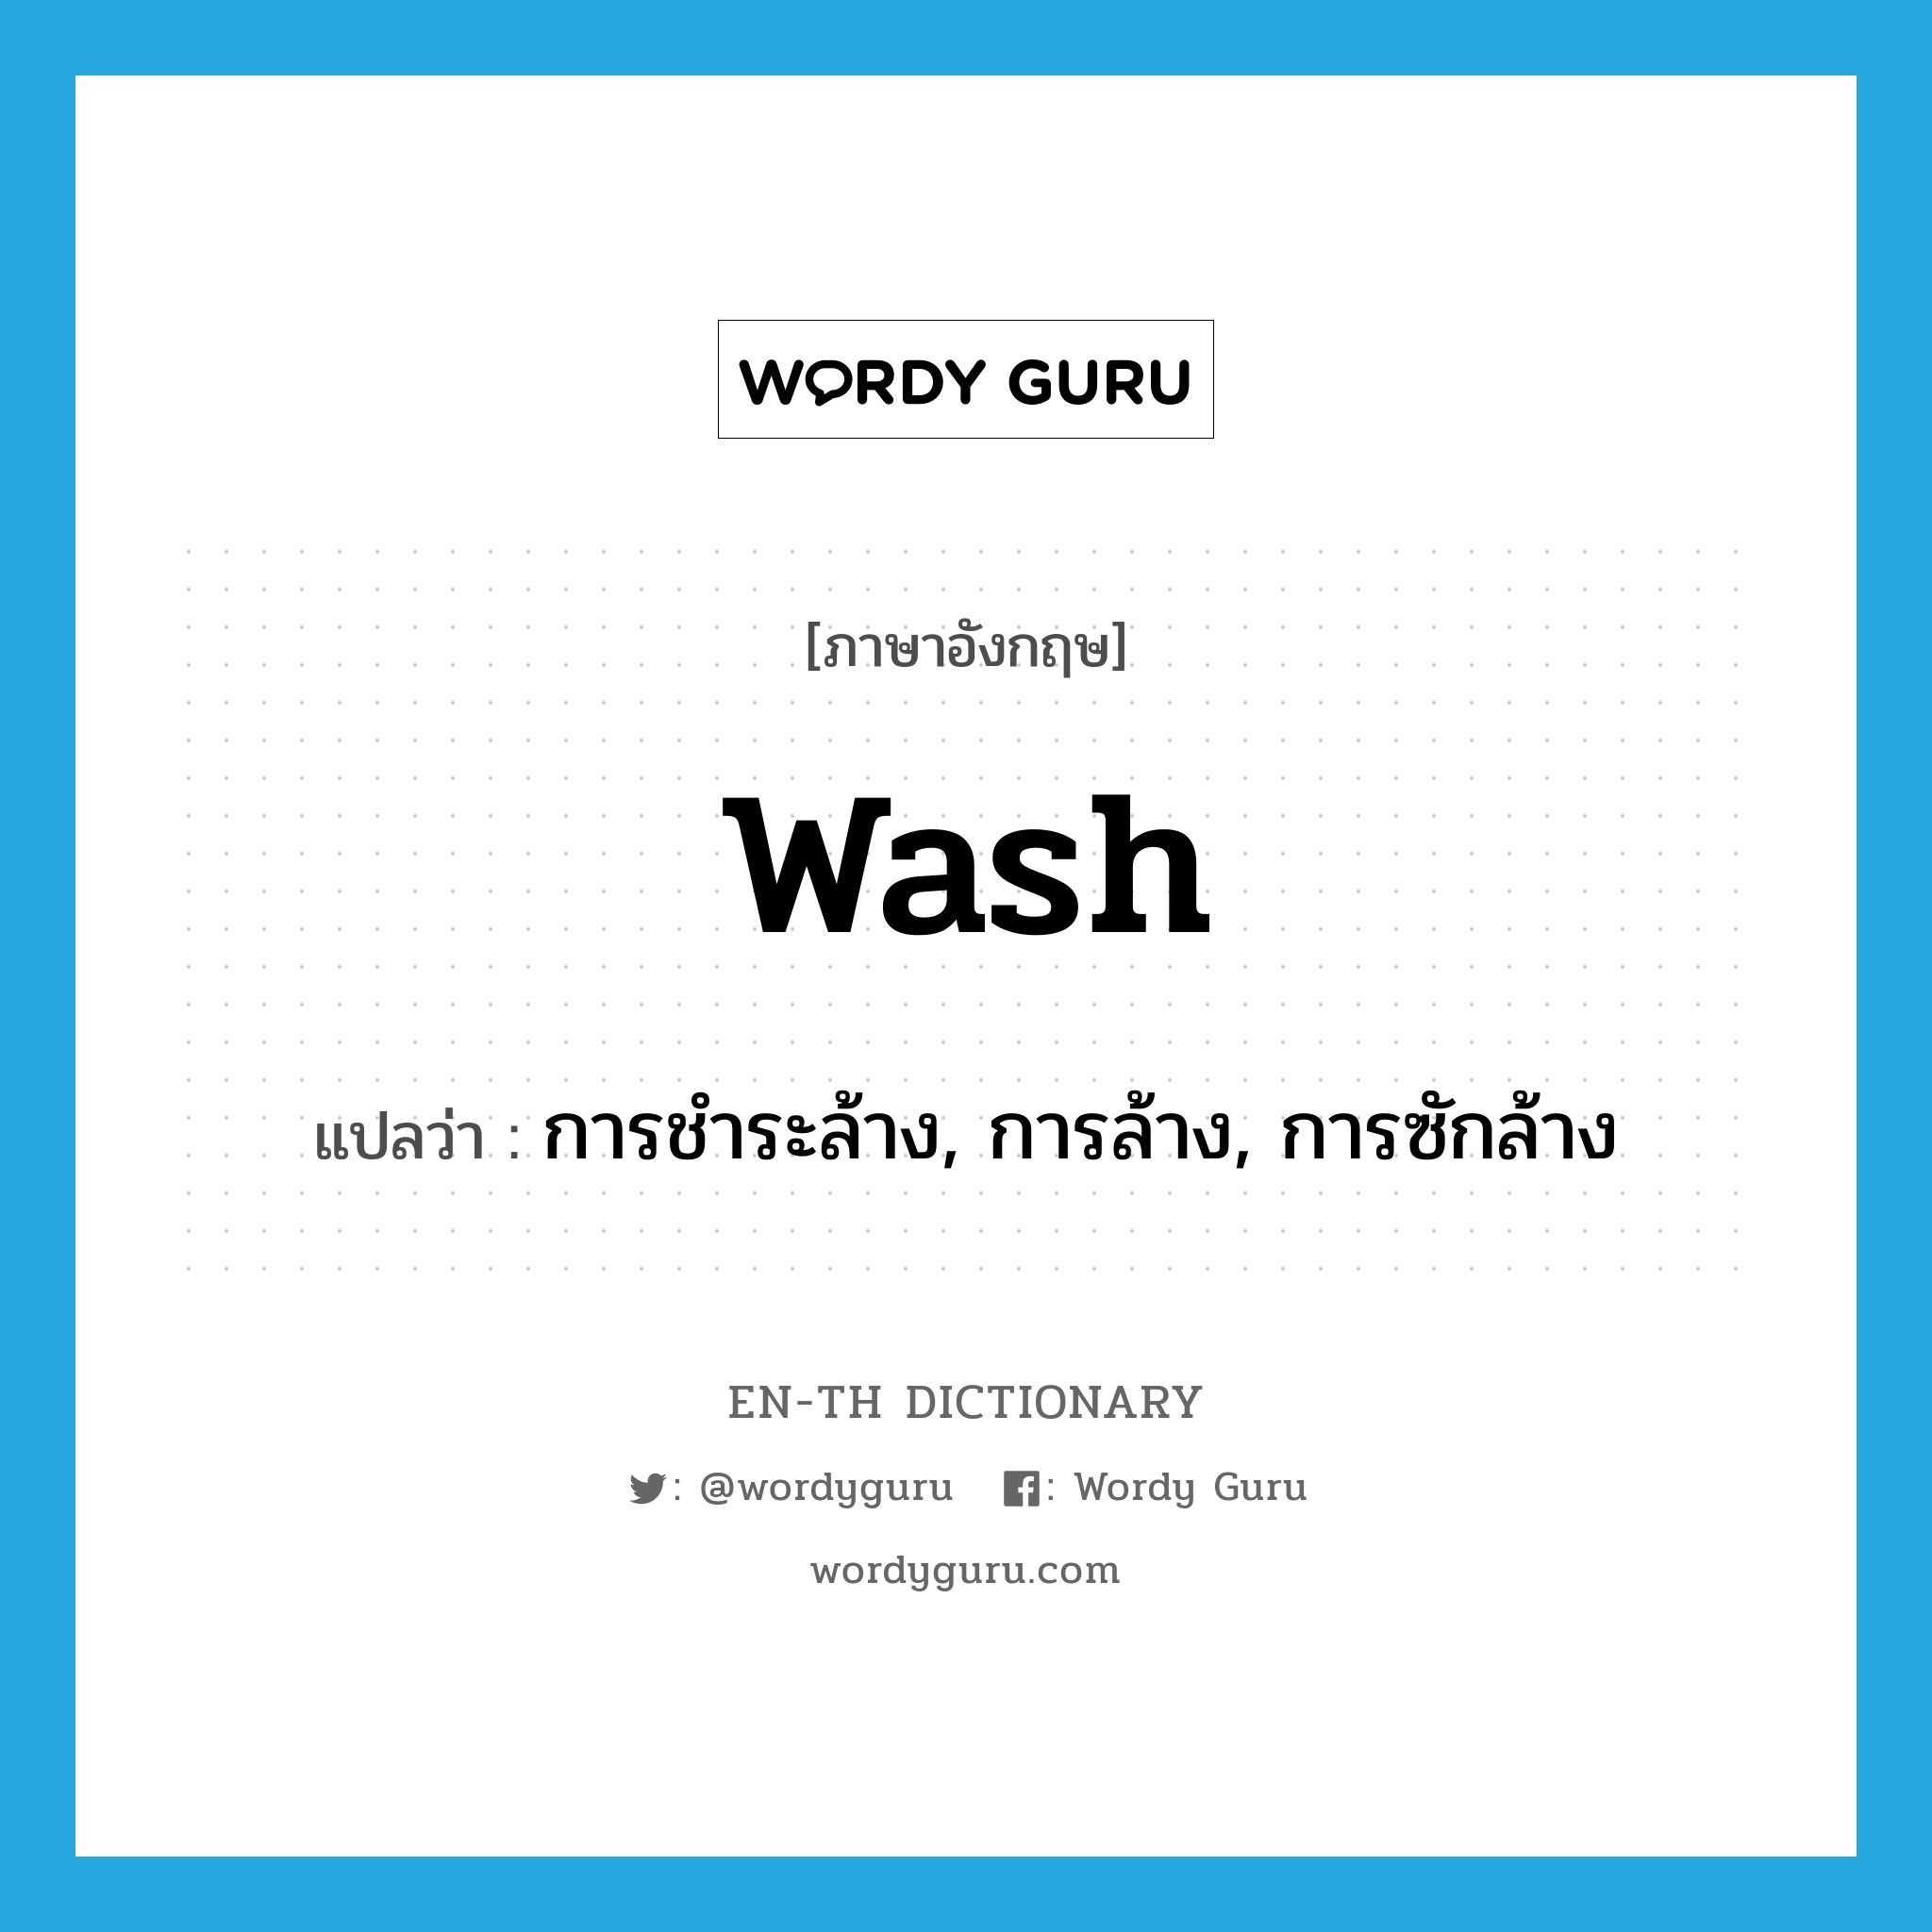 การชำระล้าง, การล้าง, การซักล้าง ภาษาอังกฤษ?, คำศัพท์ภาษาอังกฤษ การชำระล้าง, การล้าง, การซักล้าง แปลว่า wash ประเภท N หมวด N